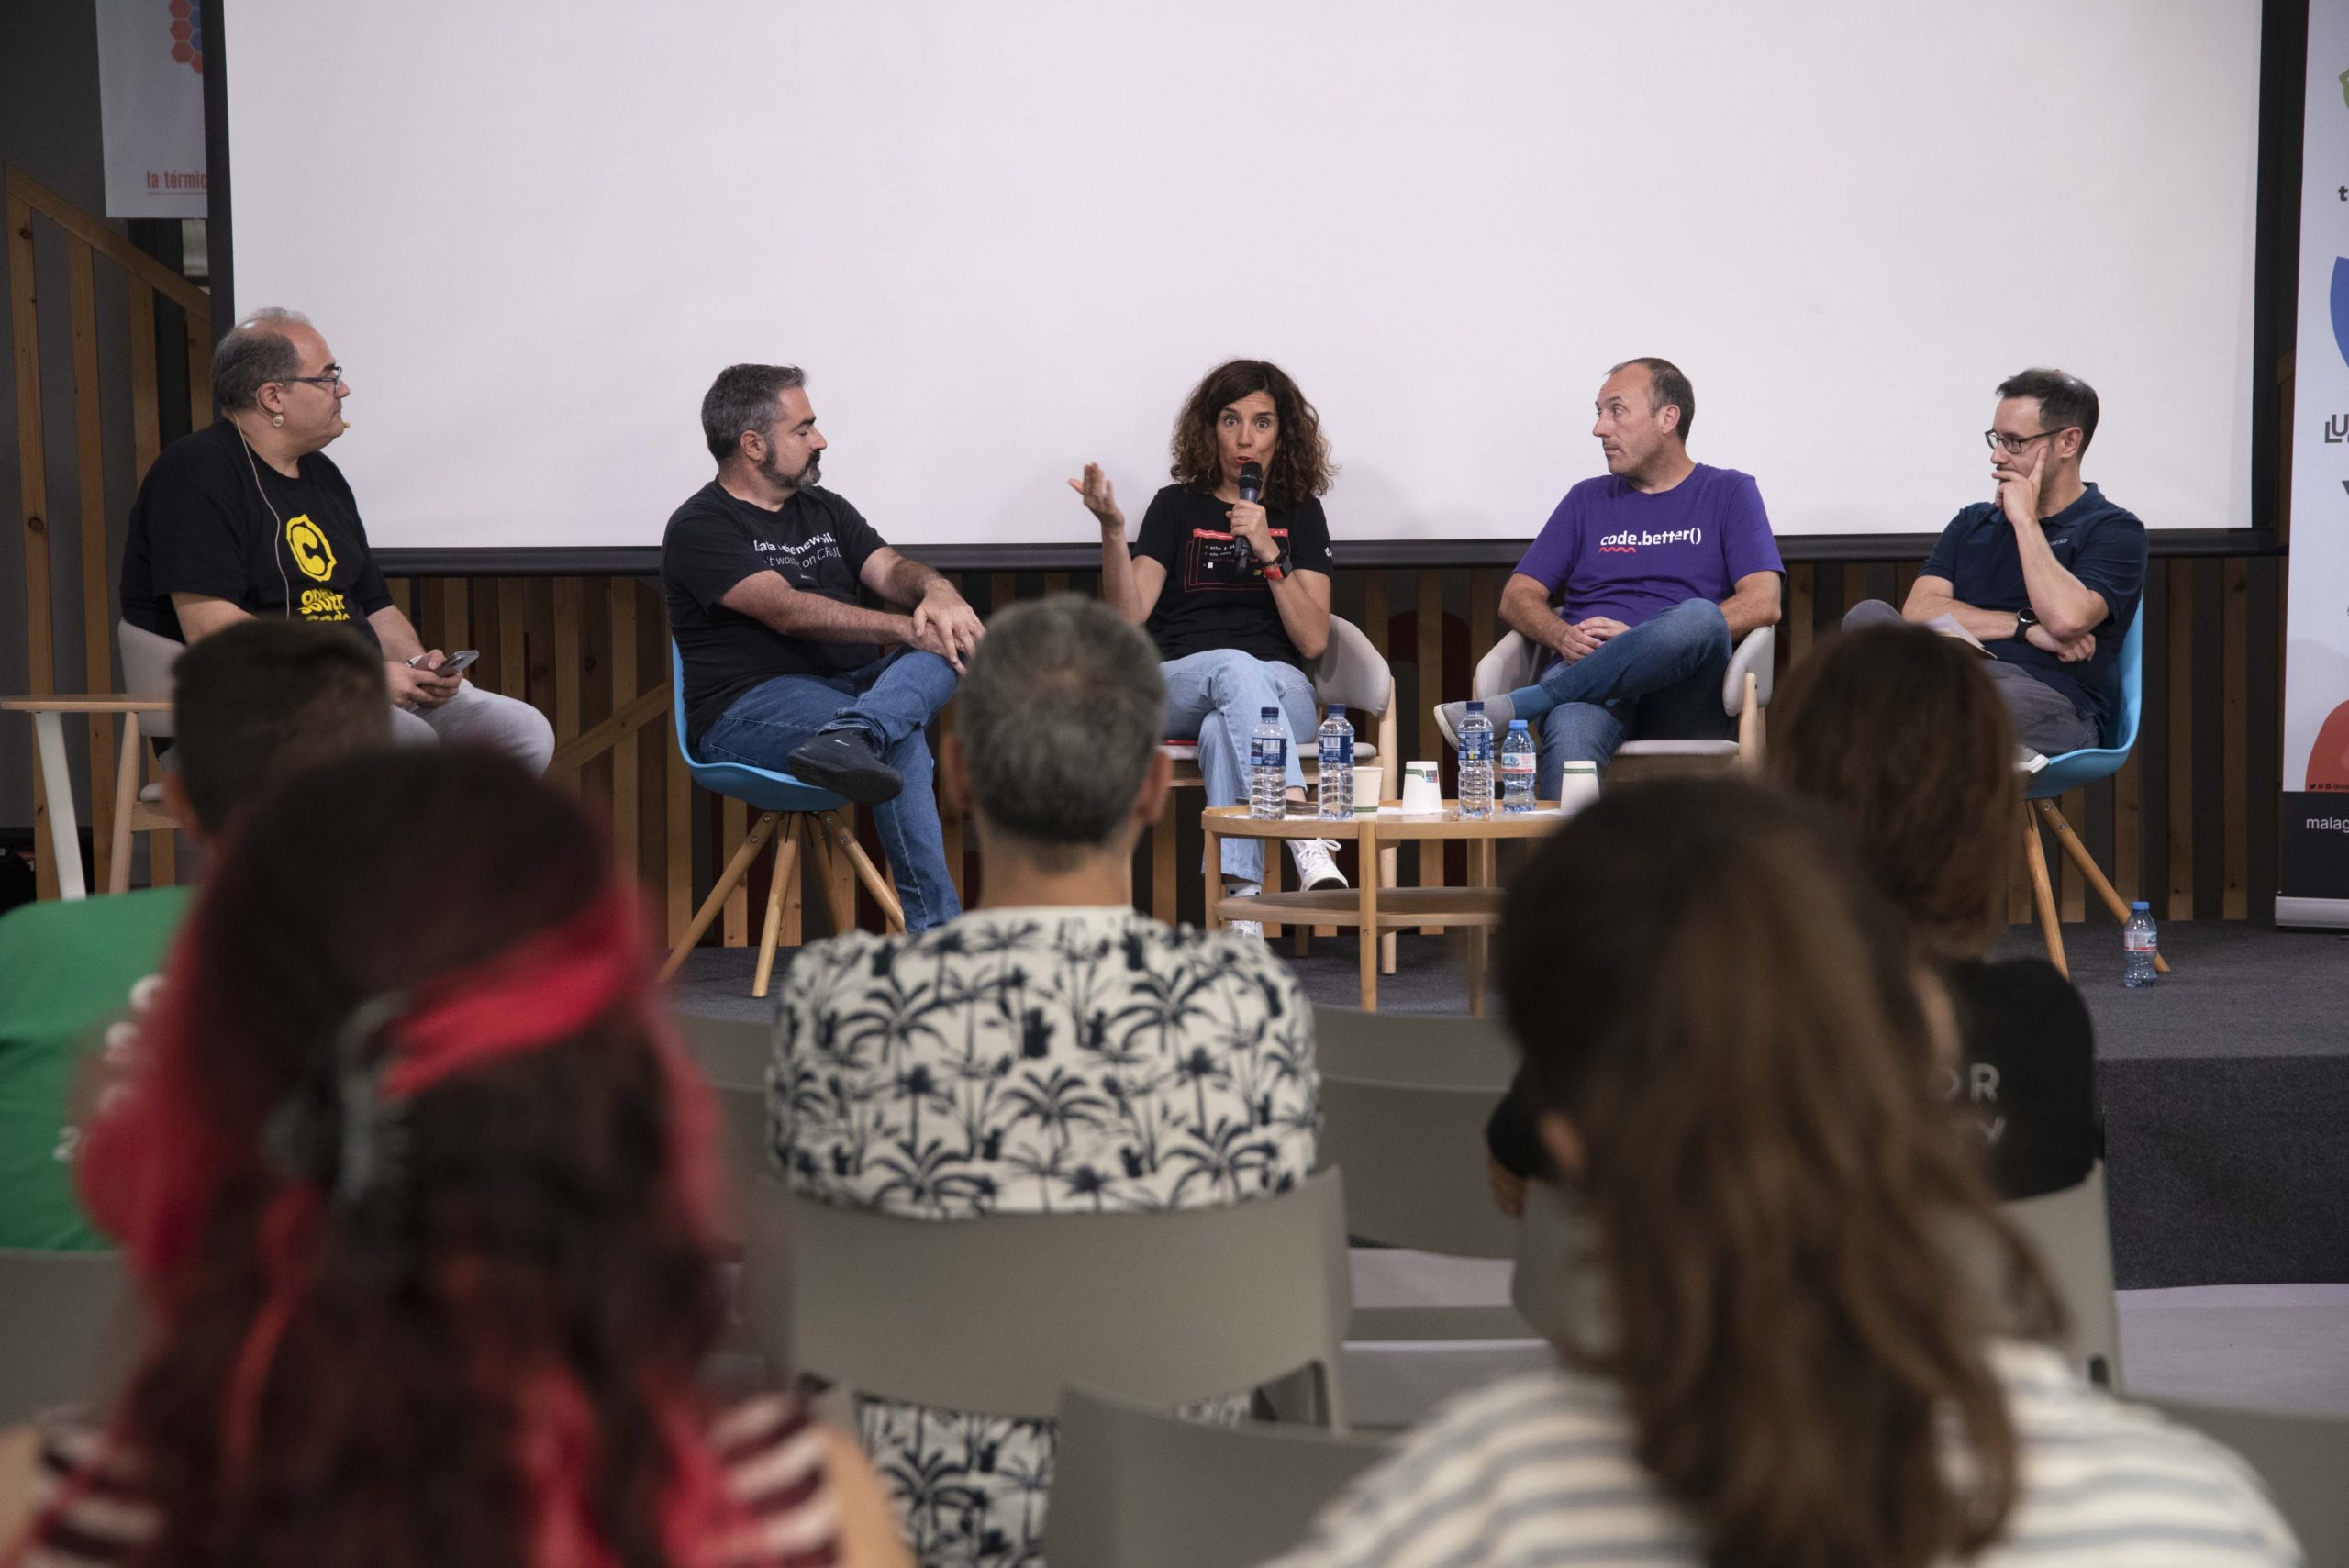 Vista de una charla de OpenSouthCode 2023 donde se ven 5 participantes en un panel de expertos sobre tecnologías modernas mientras la audiencia del mismo escucha atentamente.